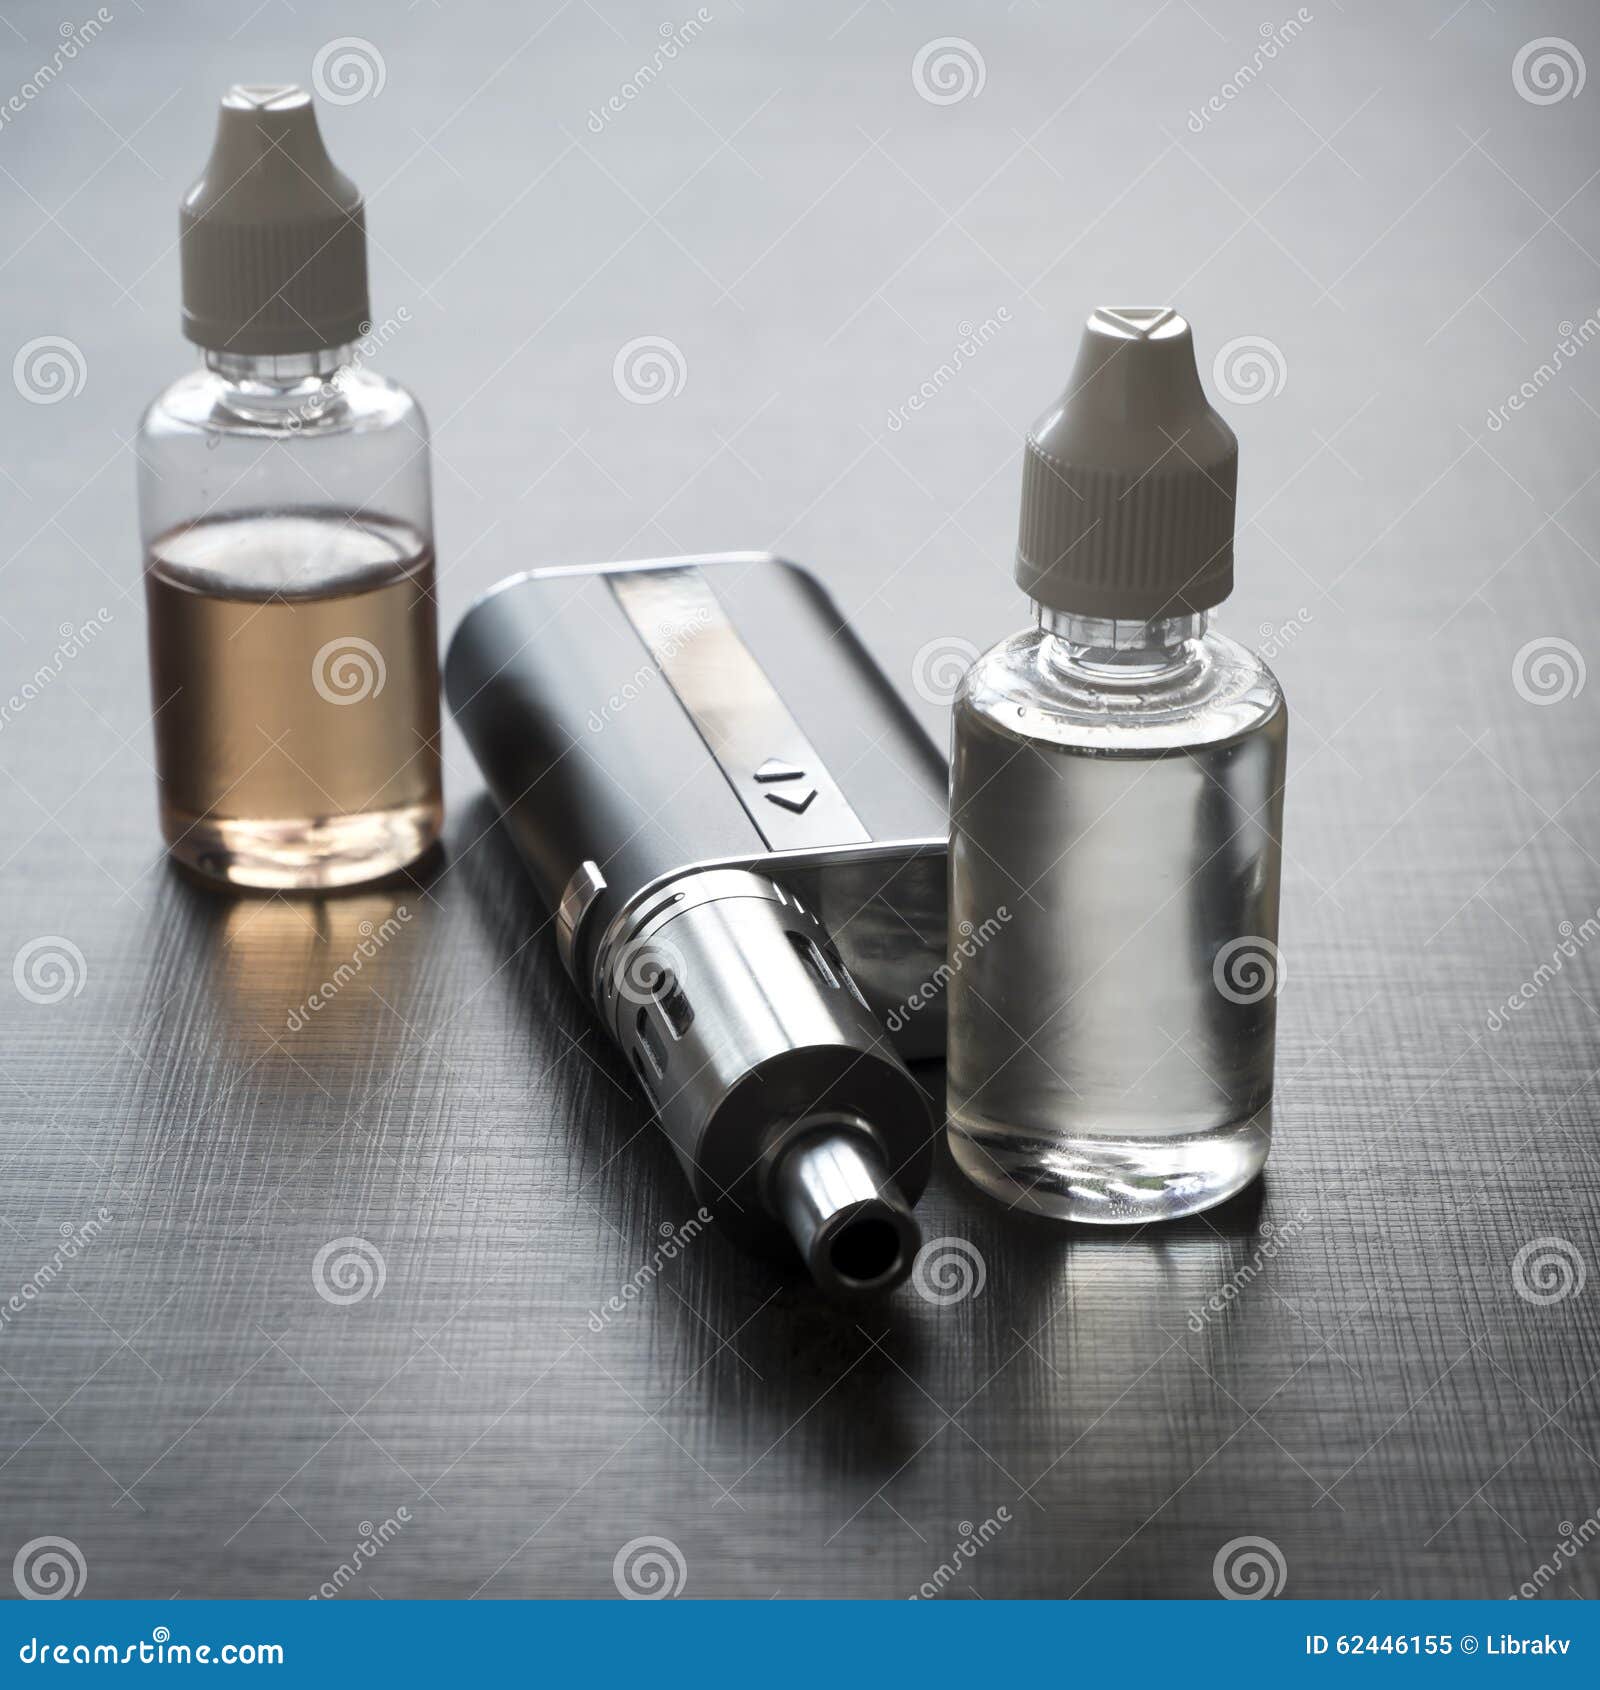 advanced personal vaporizer or e-cigarette